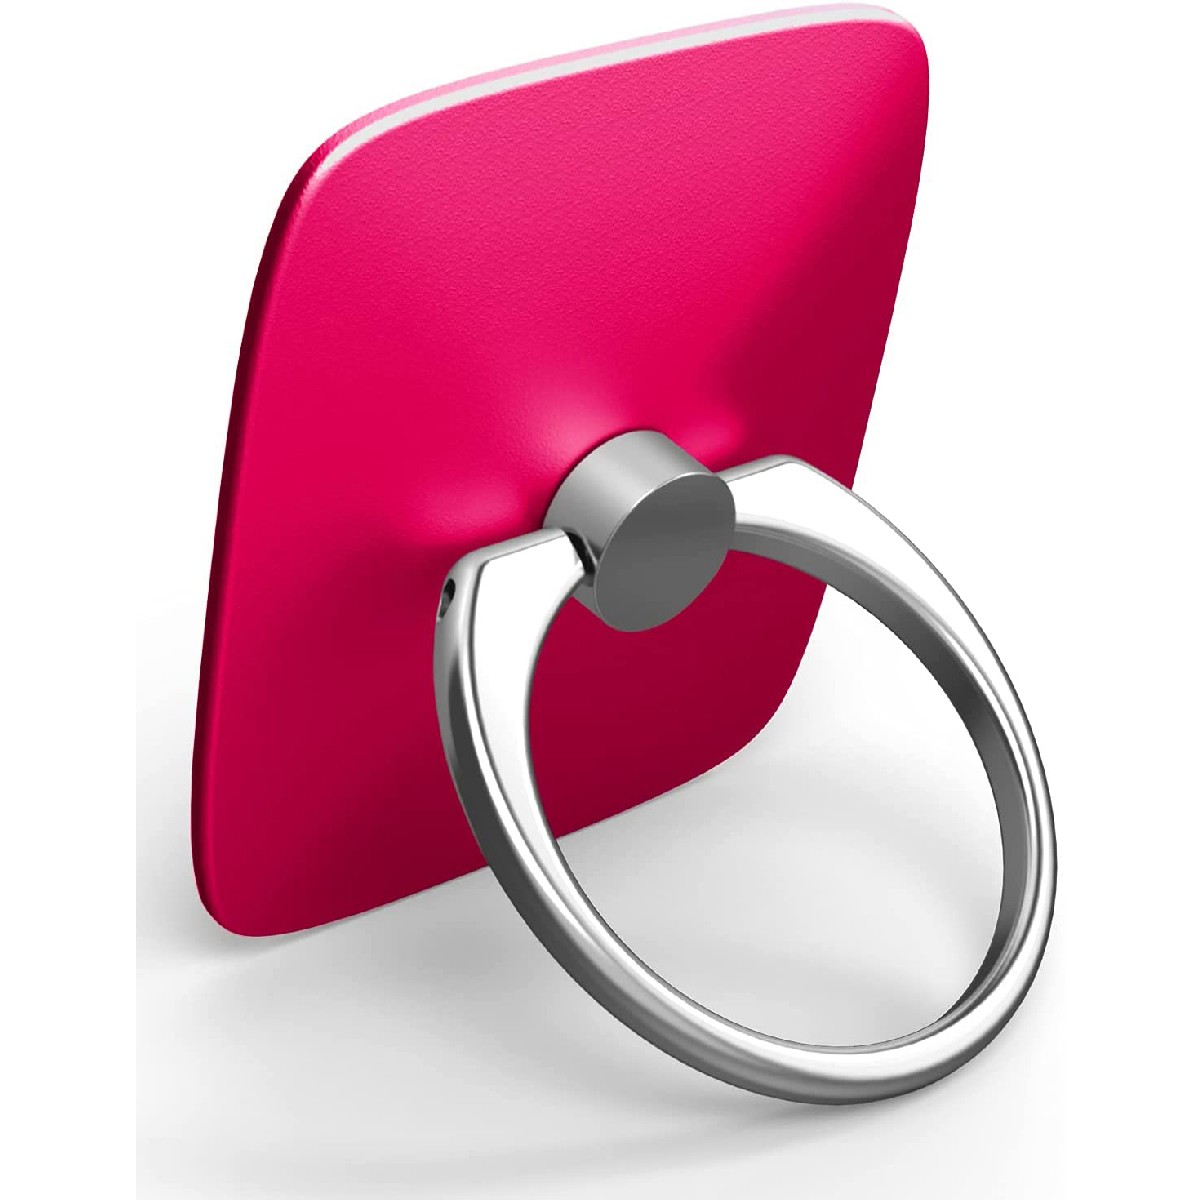 Βάση Στήριξης Δαχτυλίδι Goospery Wow Ring για Κινητά Τηλέφωνα Ροζ